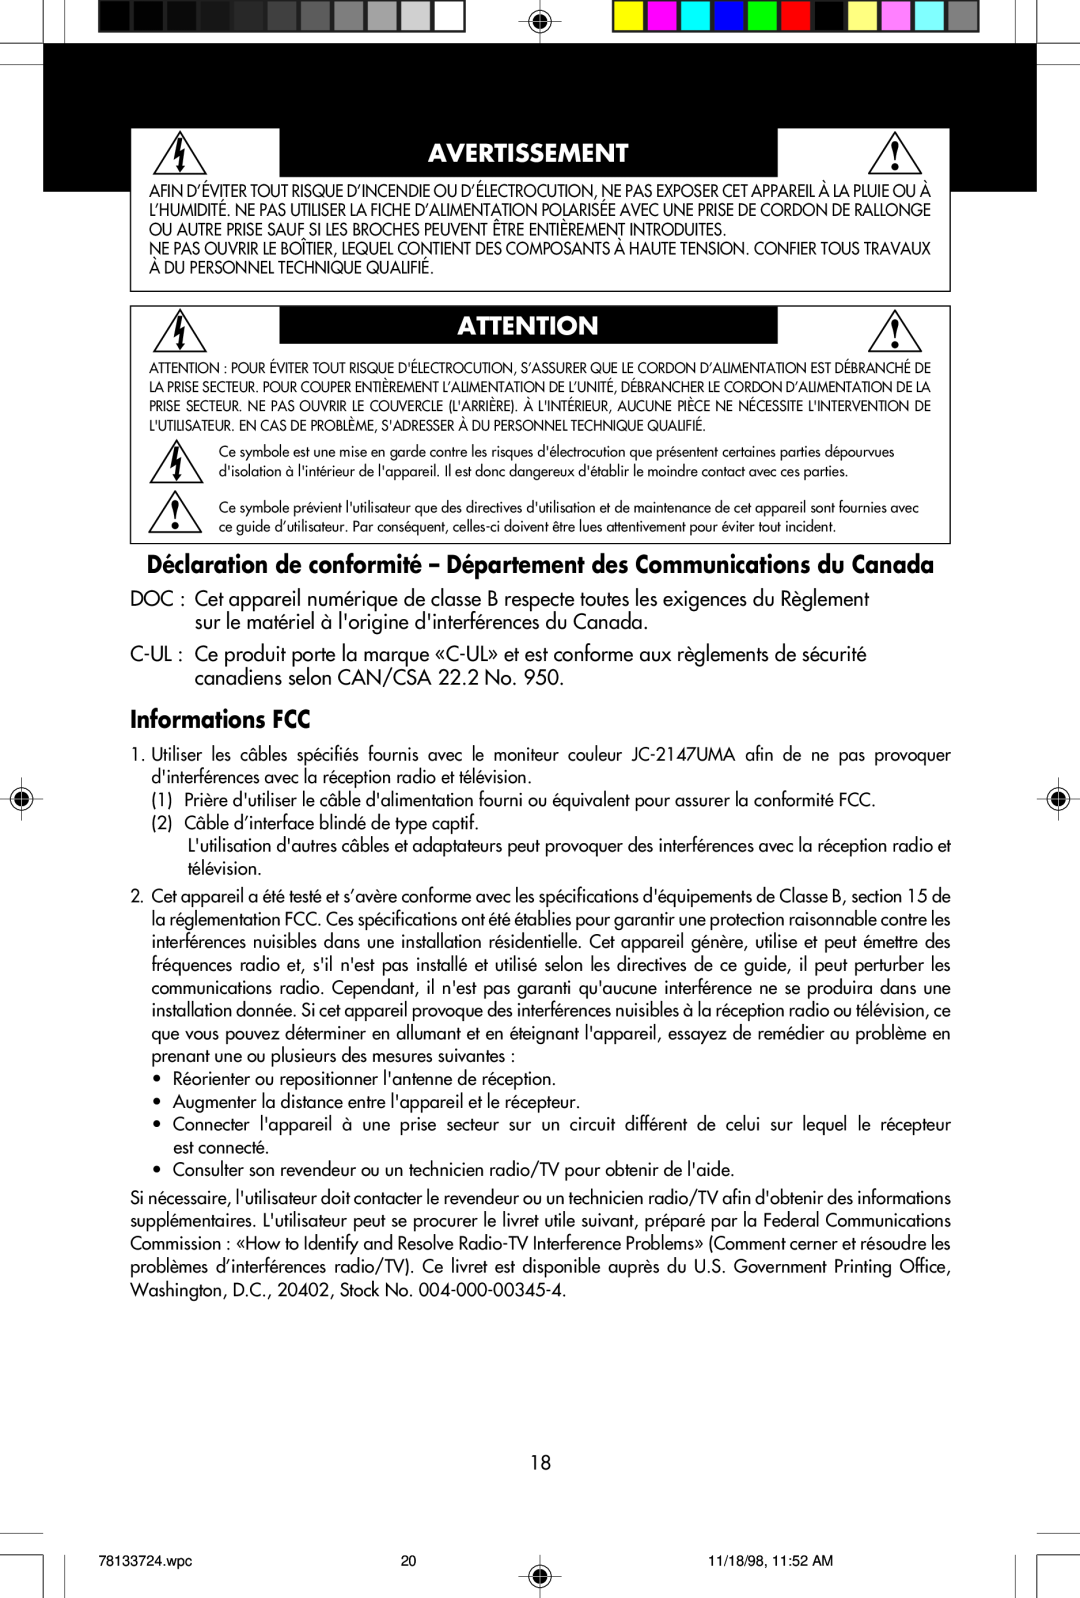 NEC E1100+ Avertissement, Déclaration de conformité - Département des Communications du Canada, Informations FCC 